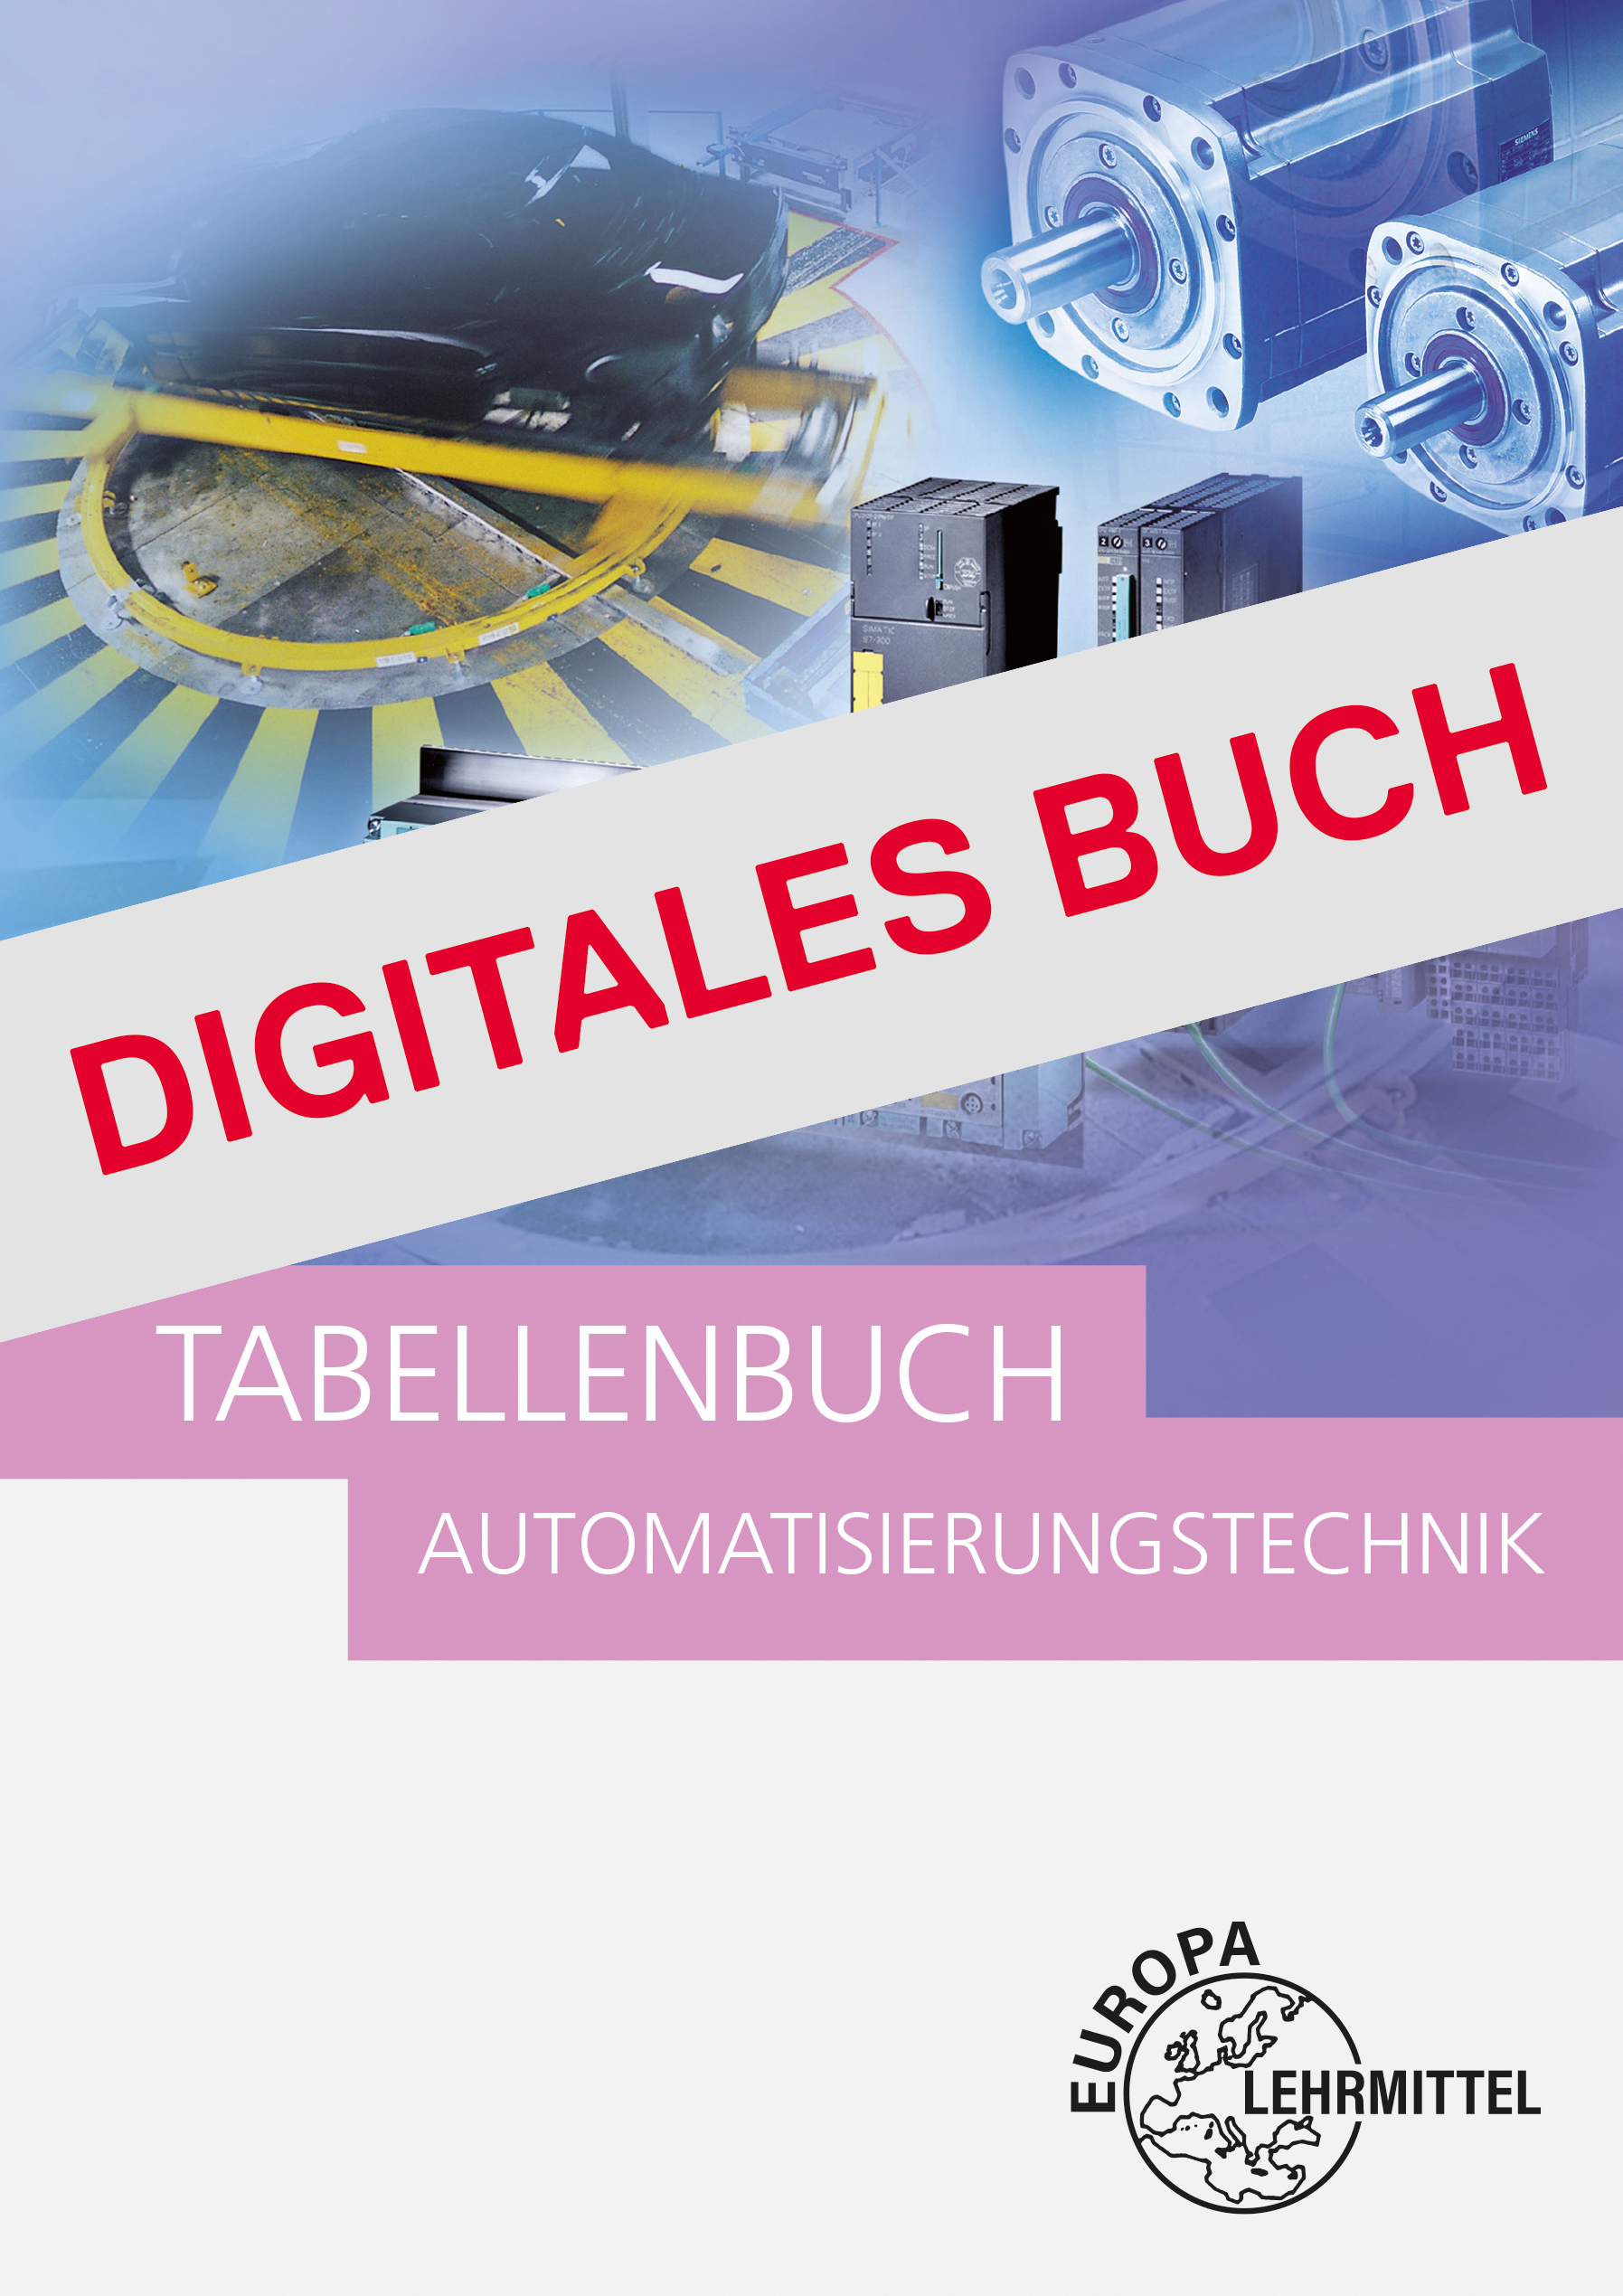 Tabellenbuch Automatisierungstechnik - Digitales Buch